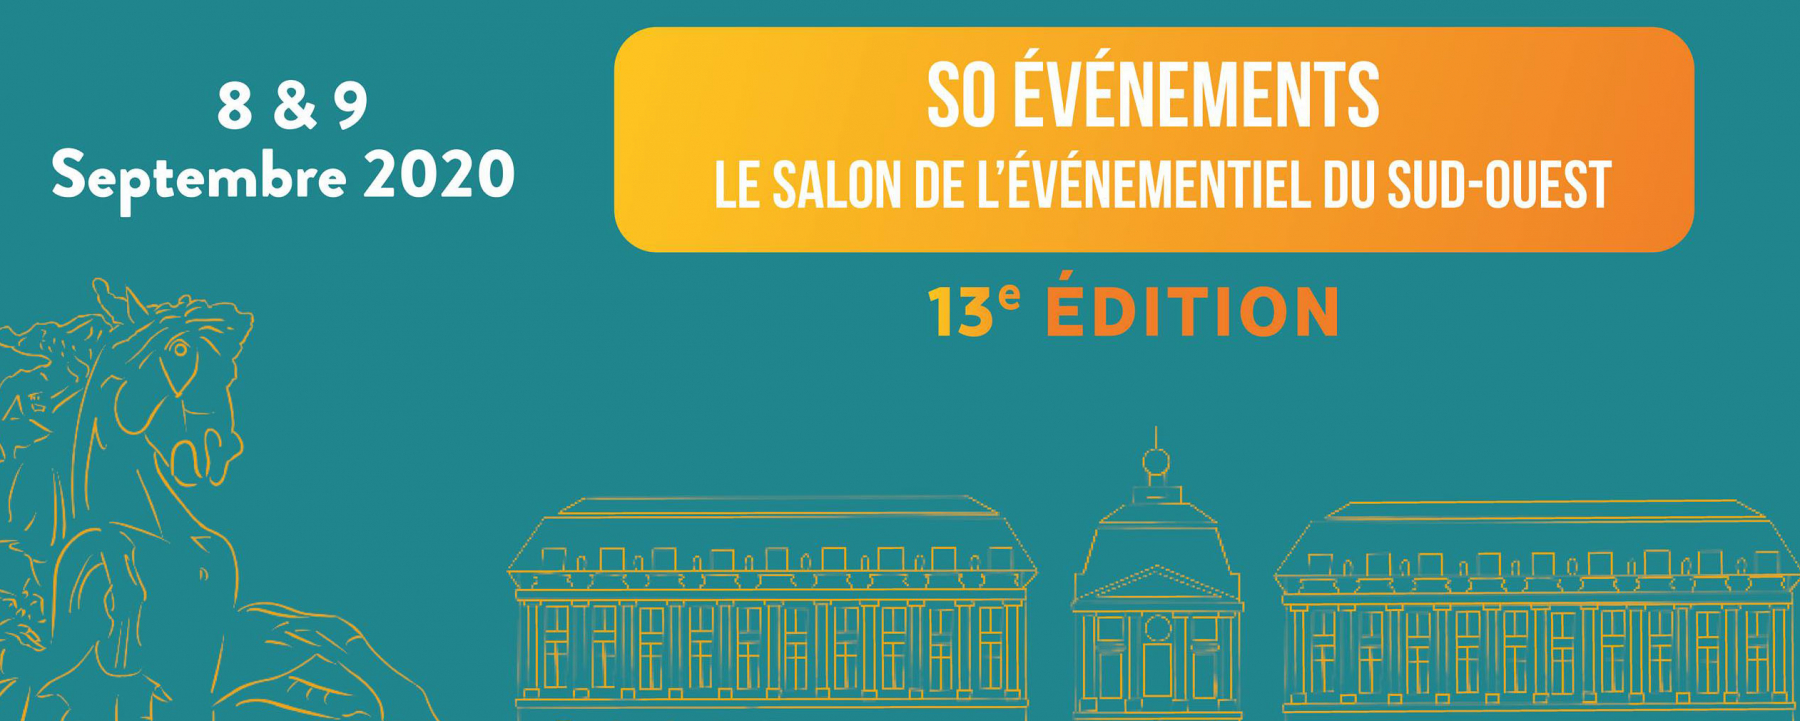 Salon So Événements, les 8 et 9 septembre 2020, à la Matmut Atlantique, Bordeaux 